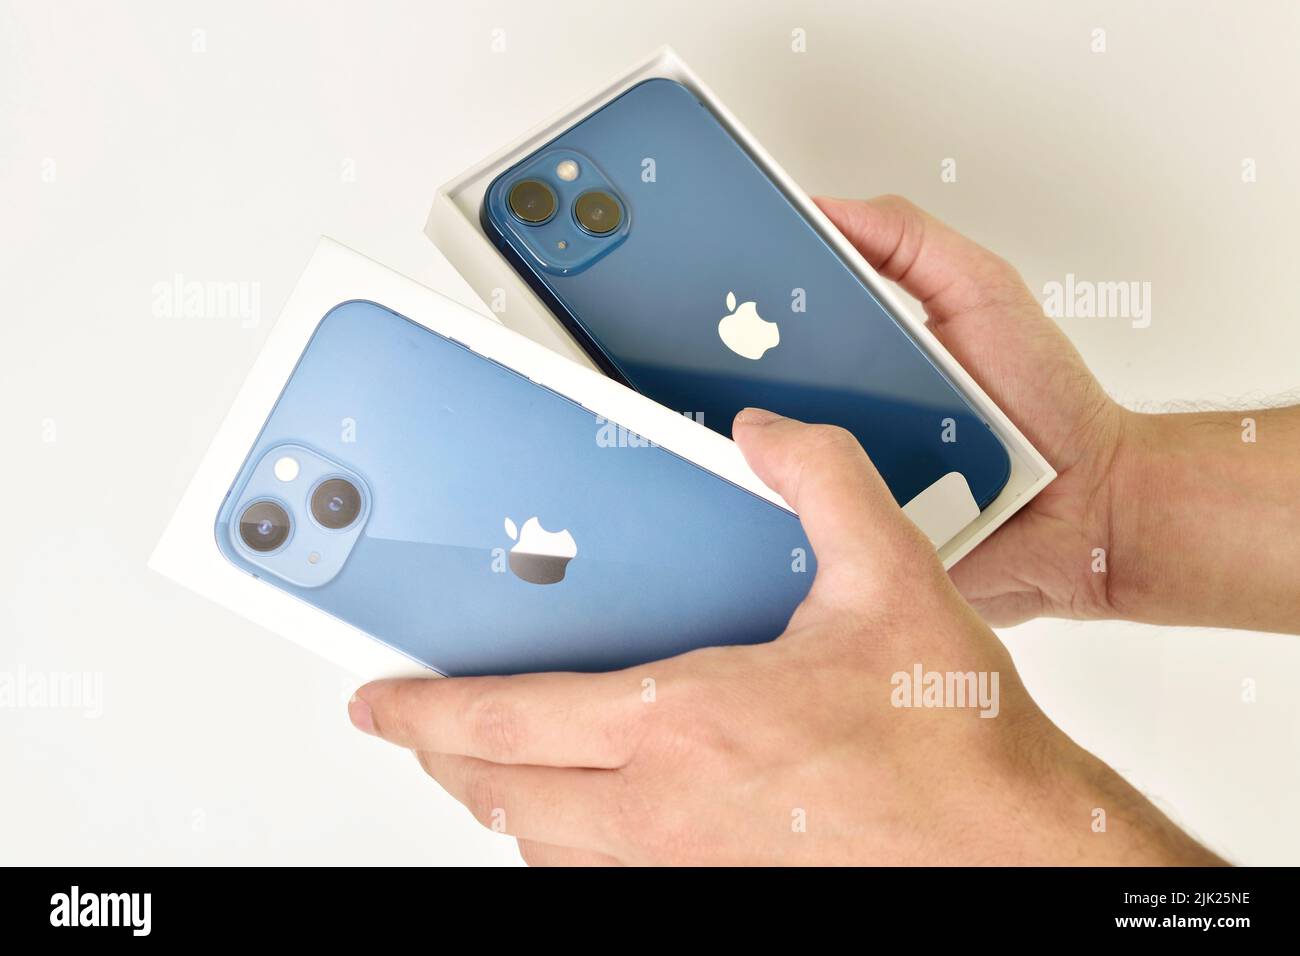 New Delhi, India - 22 giugno 2022: Unboxing iphone 13 variante di colore blu isolato su sfondo bianco Foto Stock